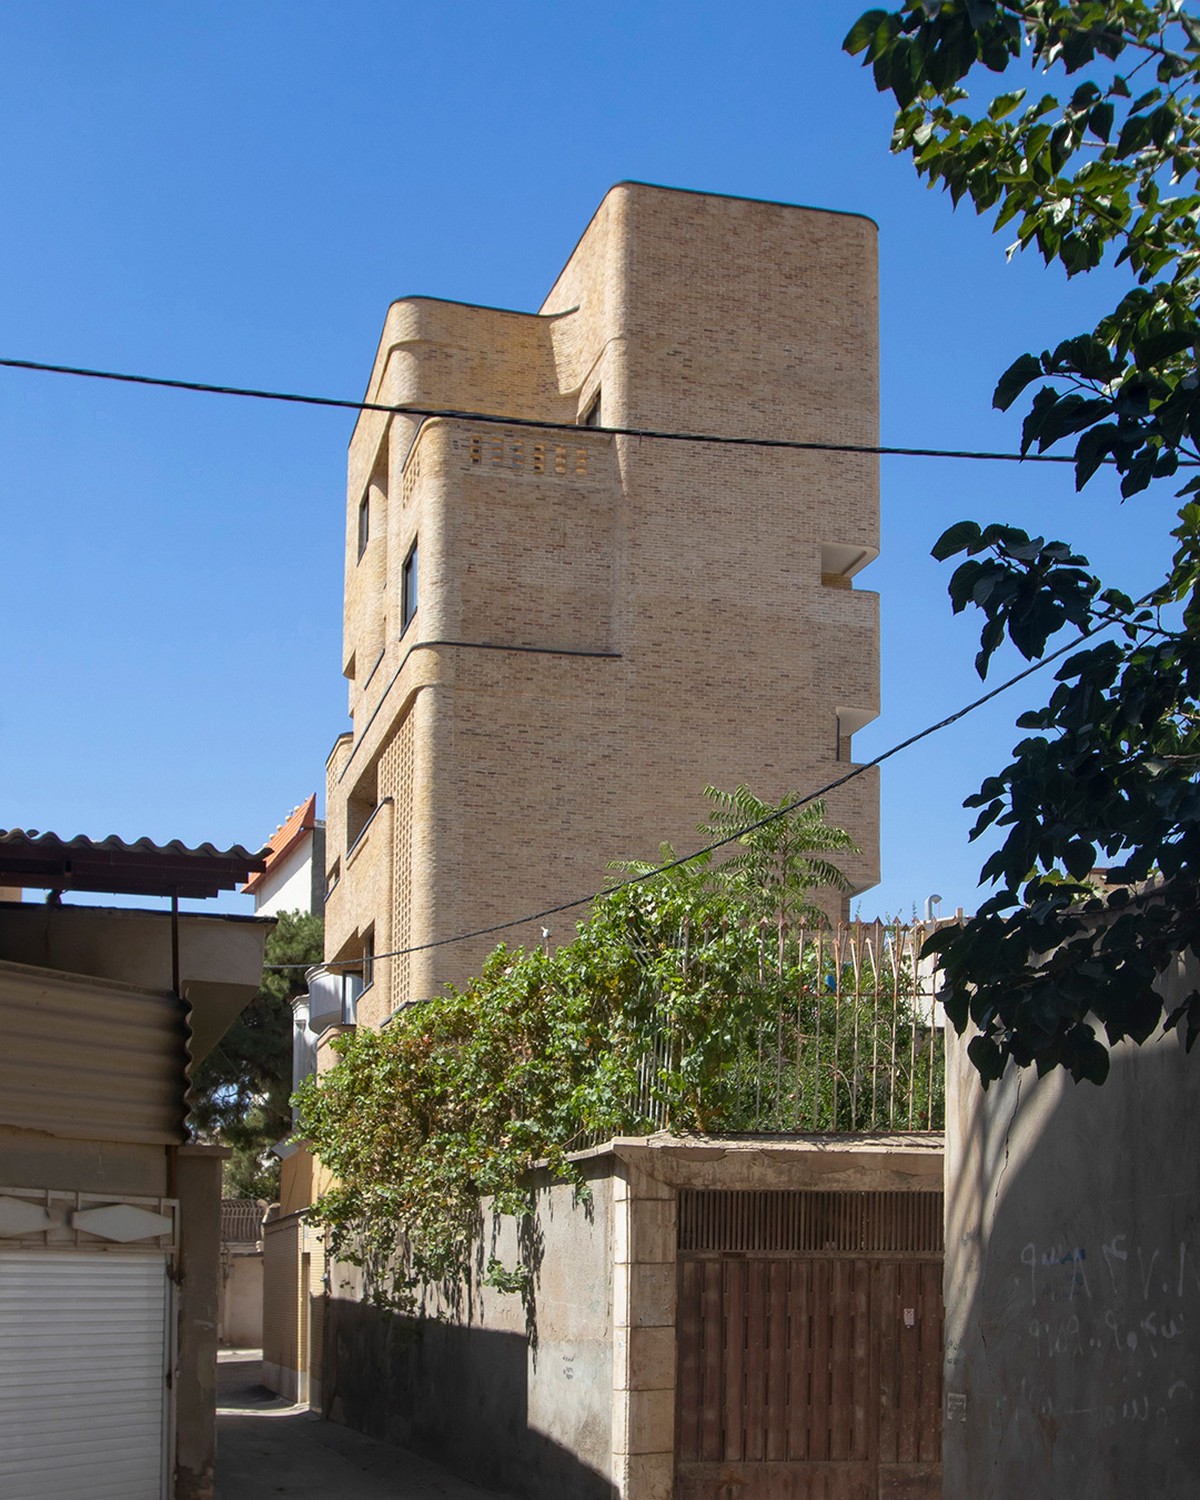 Многоквартирный жилой дом с креативным дизайном в Иране